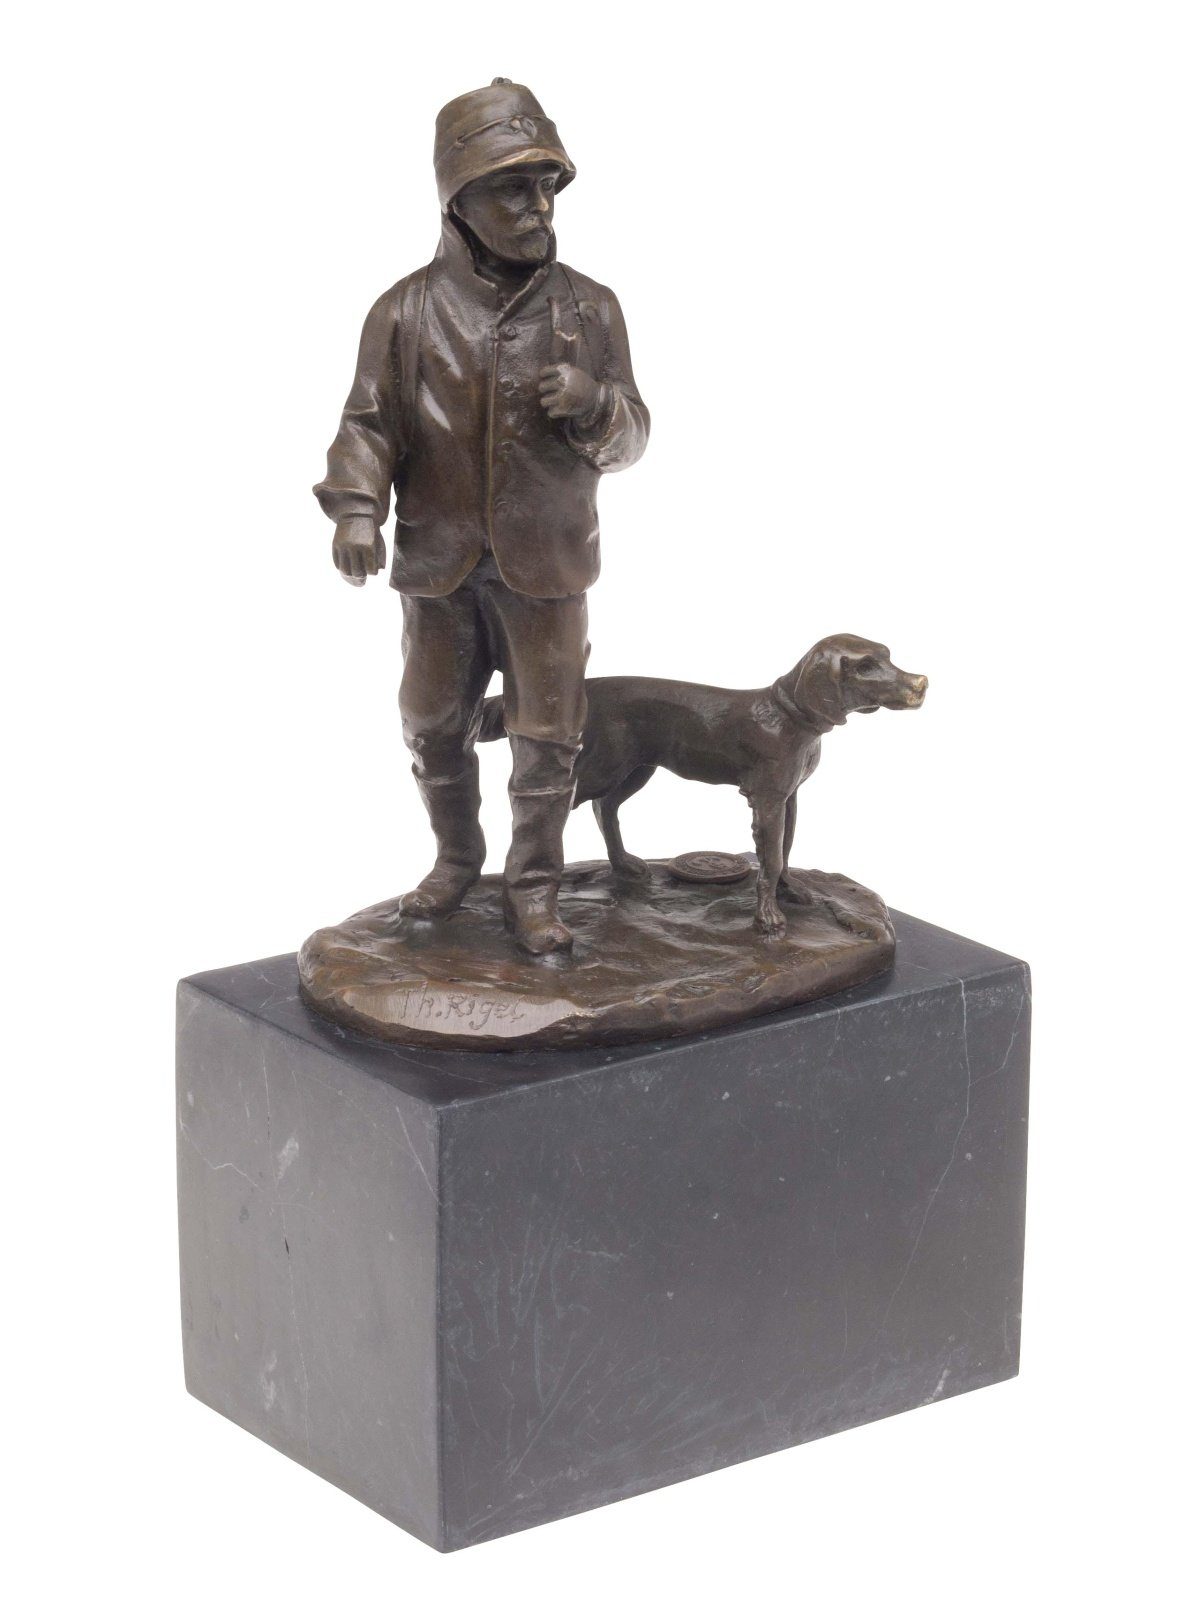 Aubaho Skulptur Hund Antik-Stil hun Bronze Bronzeskulptur Jäger Skulptur Jagd Jagdhund